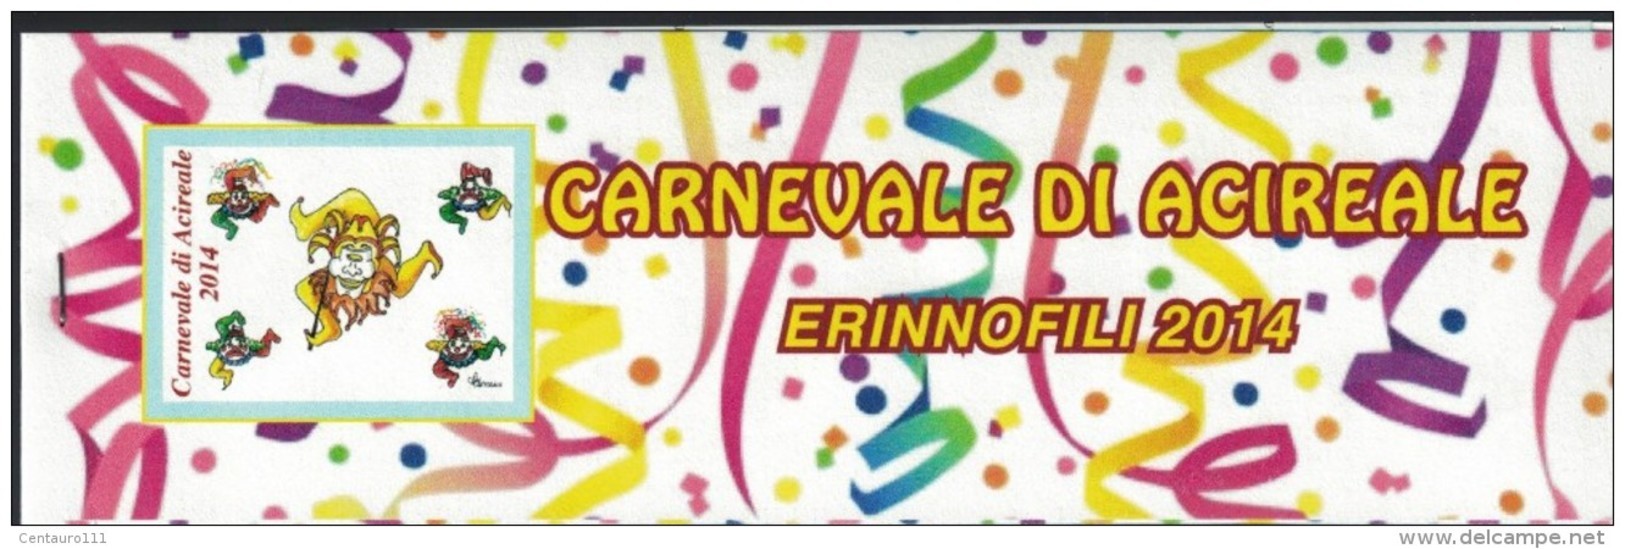 Acireale, Catania, Erinnofili, Carnevale 2014 - Vignetten (Erinnophilie)